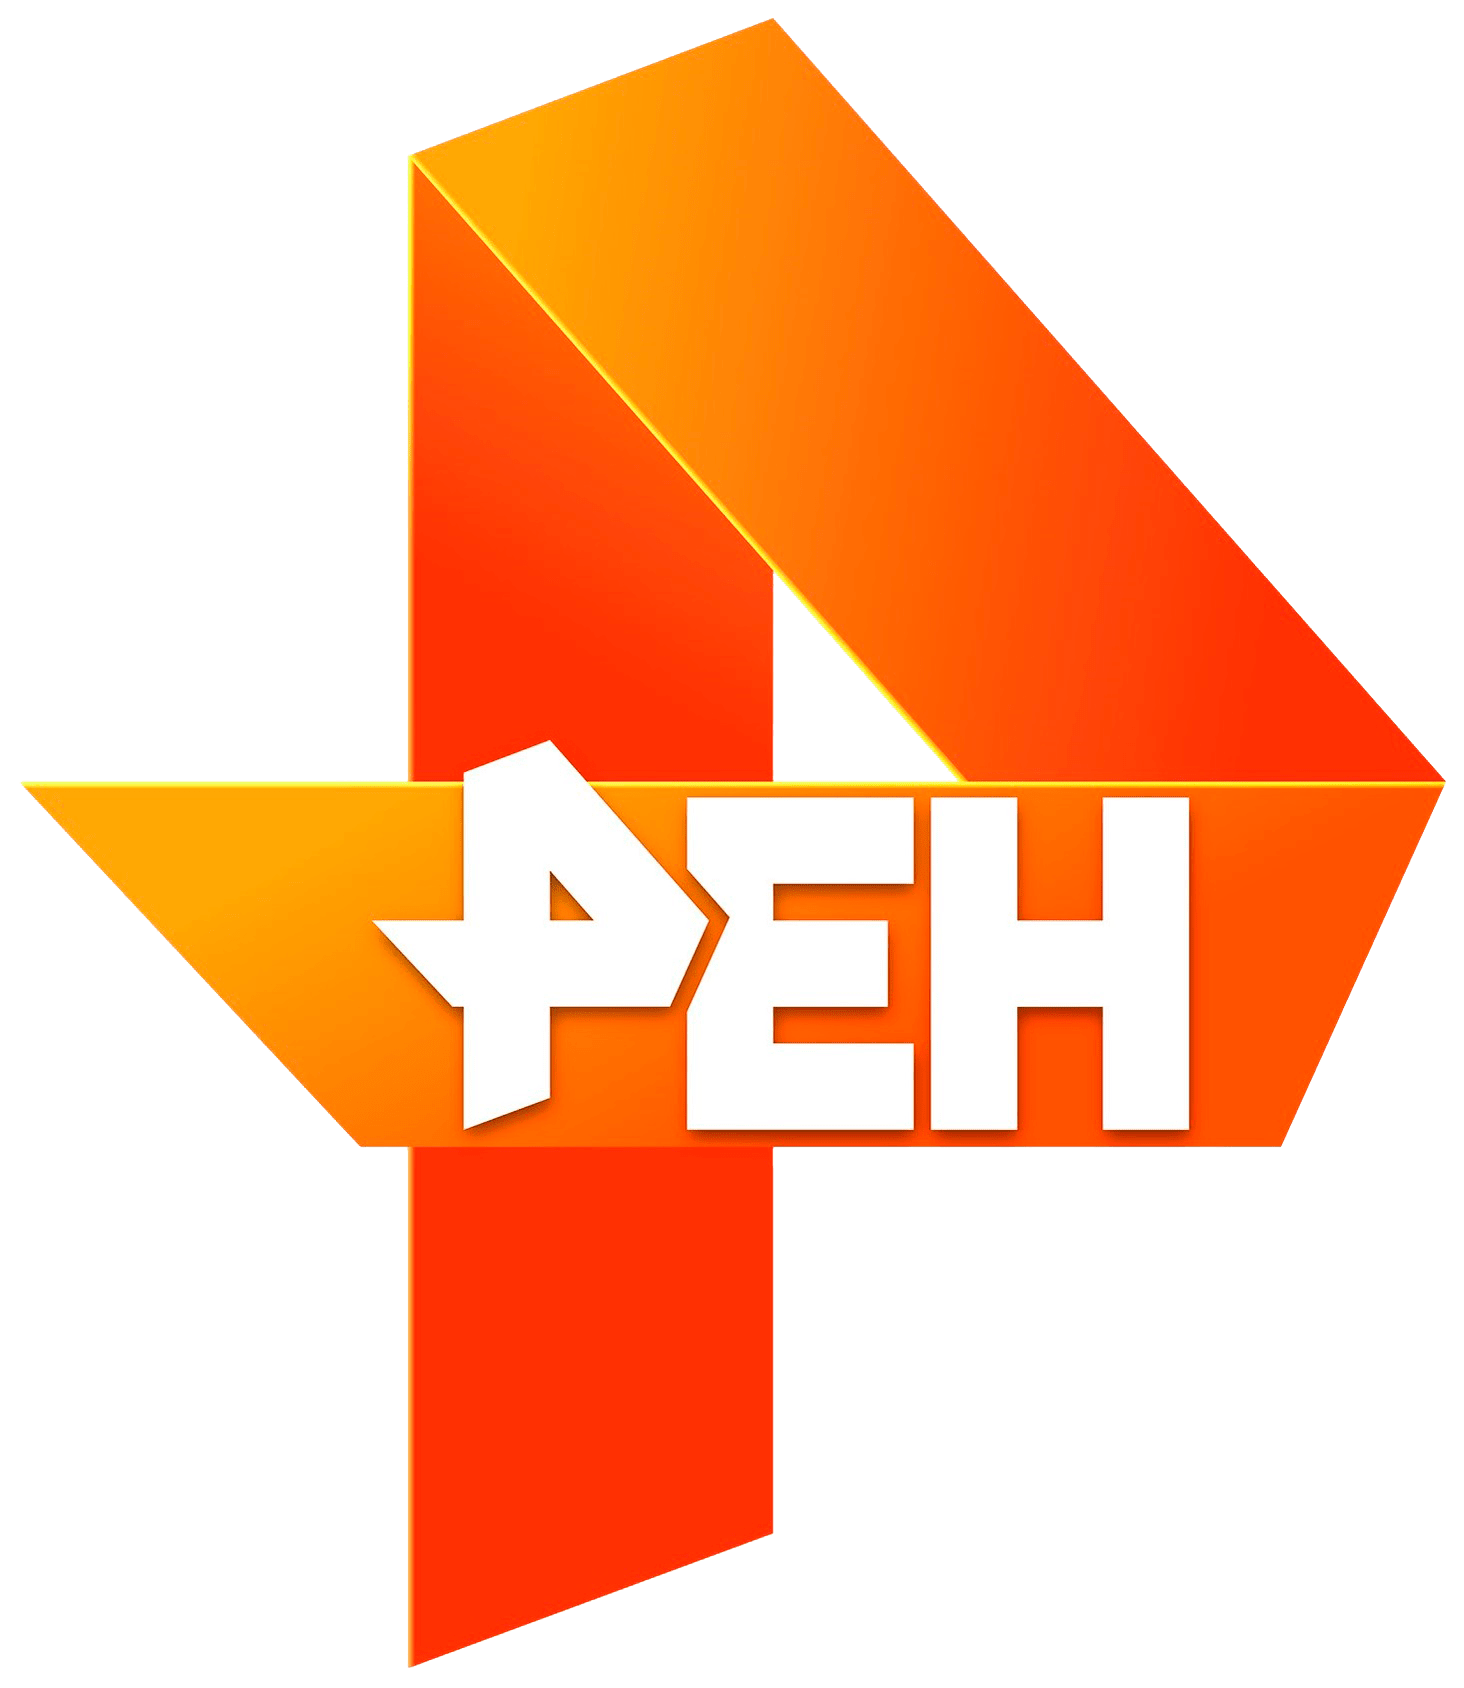 Раземщение рекламы РЕН ТВ, г.Пенза